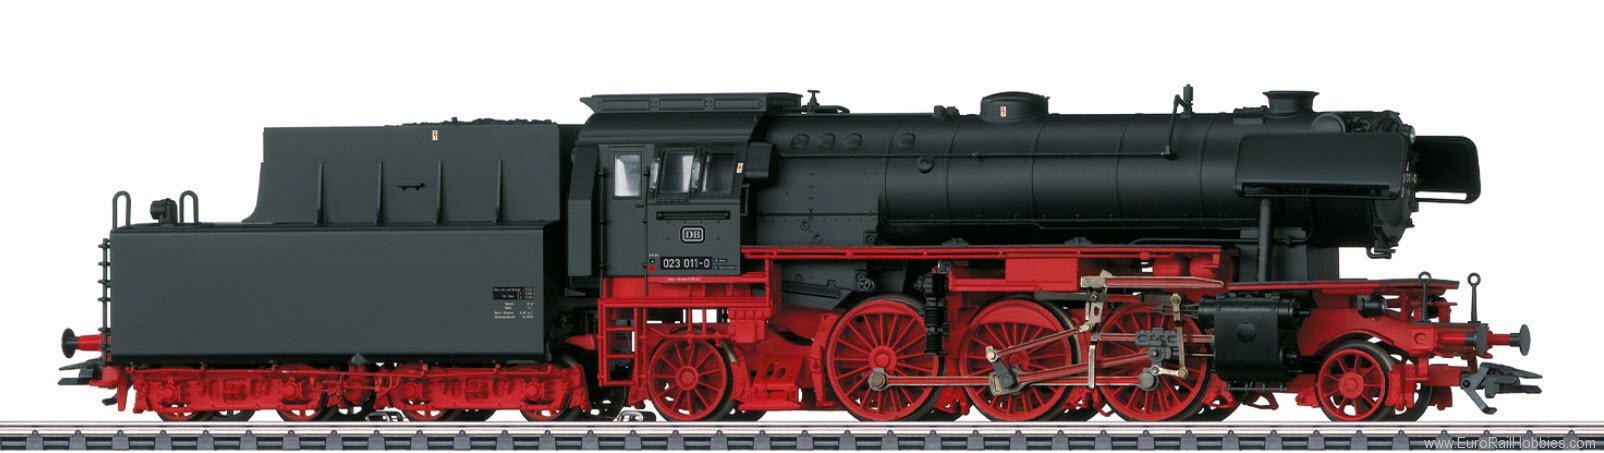 Marklin 39231 DB BR 023 Steam Locomotive MFX+ w/Sound